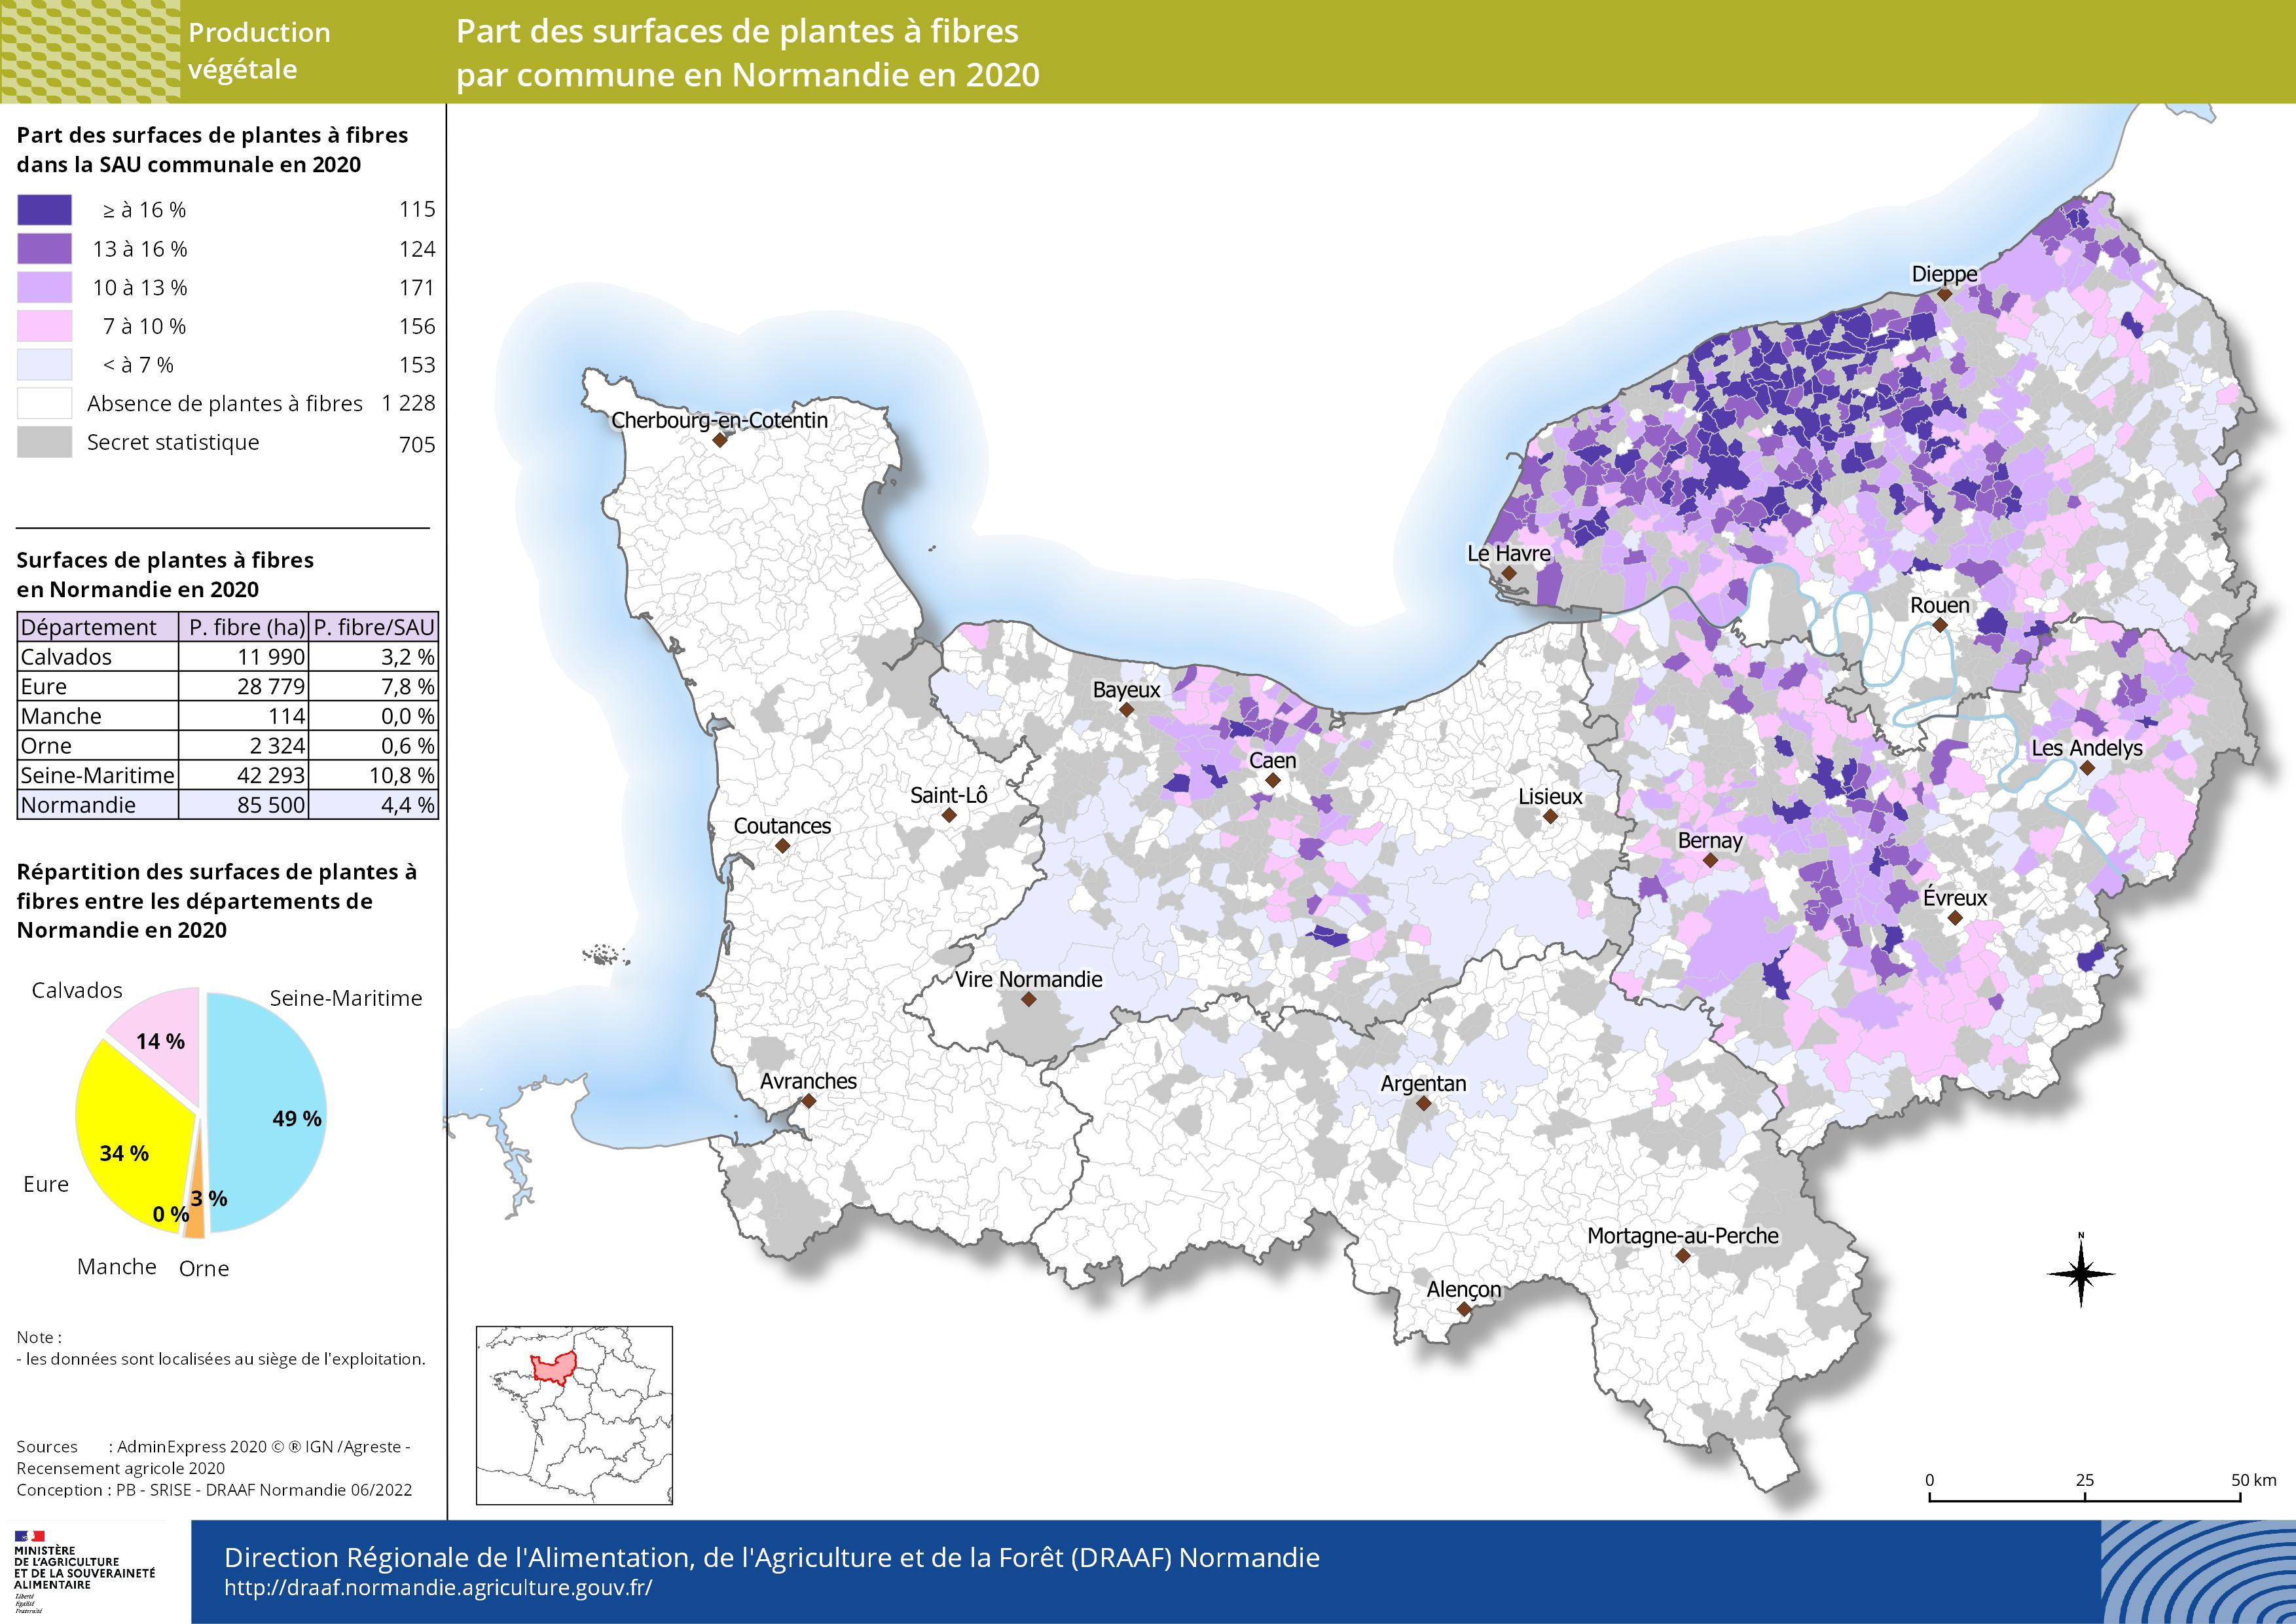 carte représentant la part des surfaces de plantes à fibres par commune en Normandie en 2020